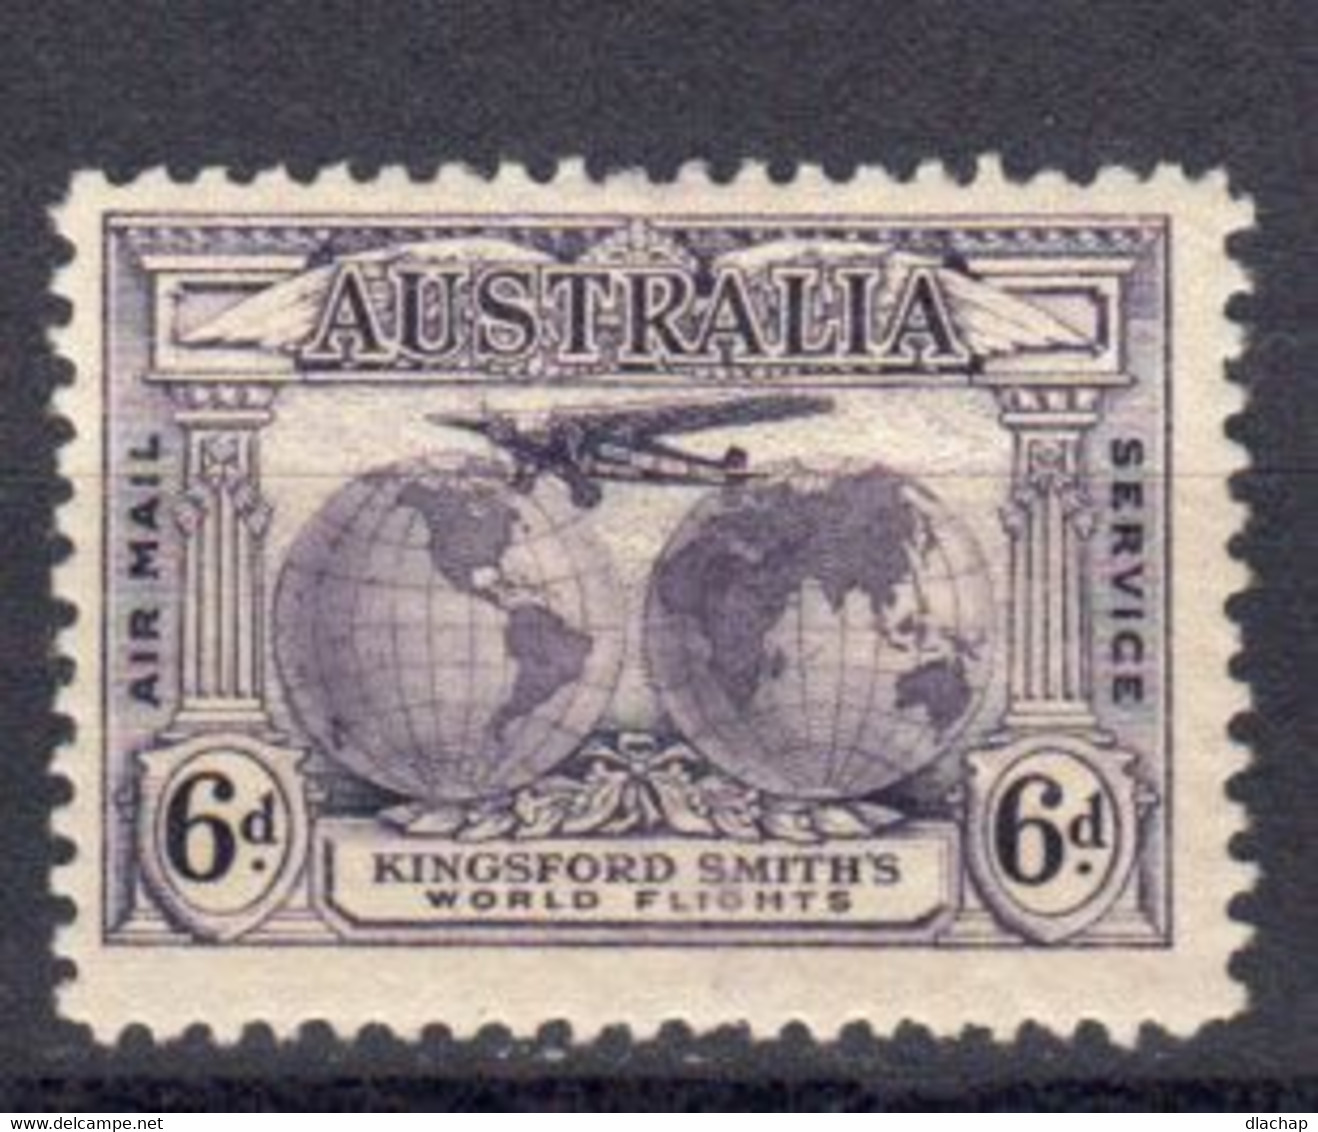 Australie Poste Aerienne 1931 Yvert 3 * Neuf Avec Charniere - Ongebruikt